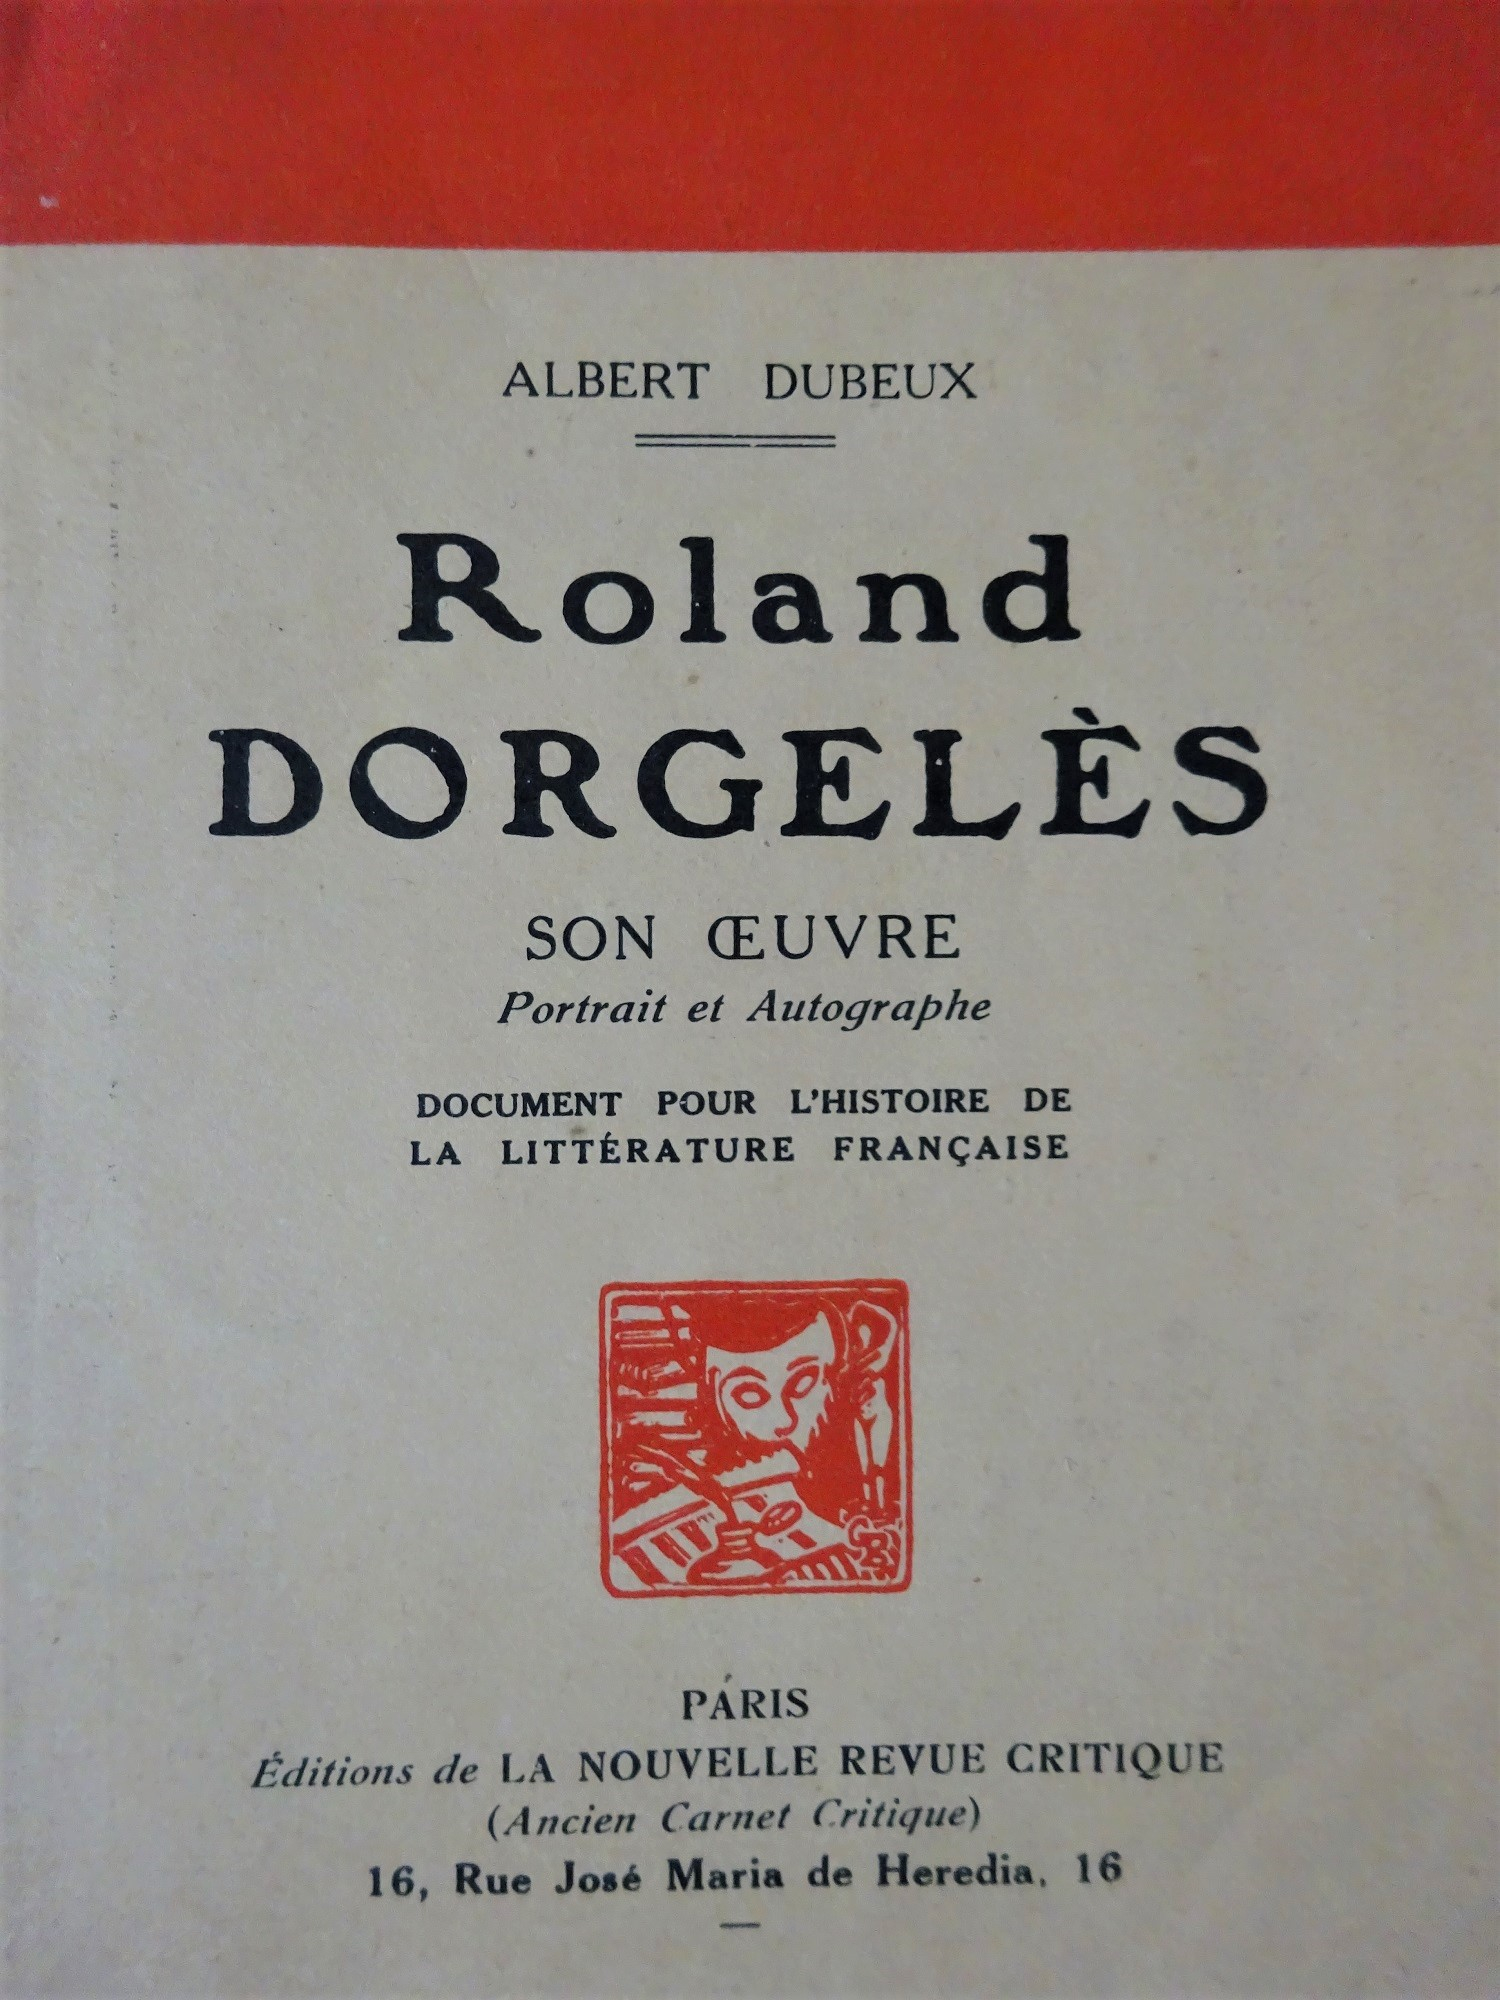 Roland Dorgelès Son oeuvre Portrait et Autographe